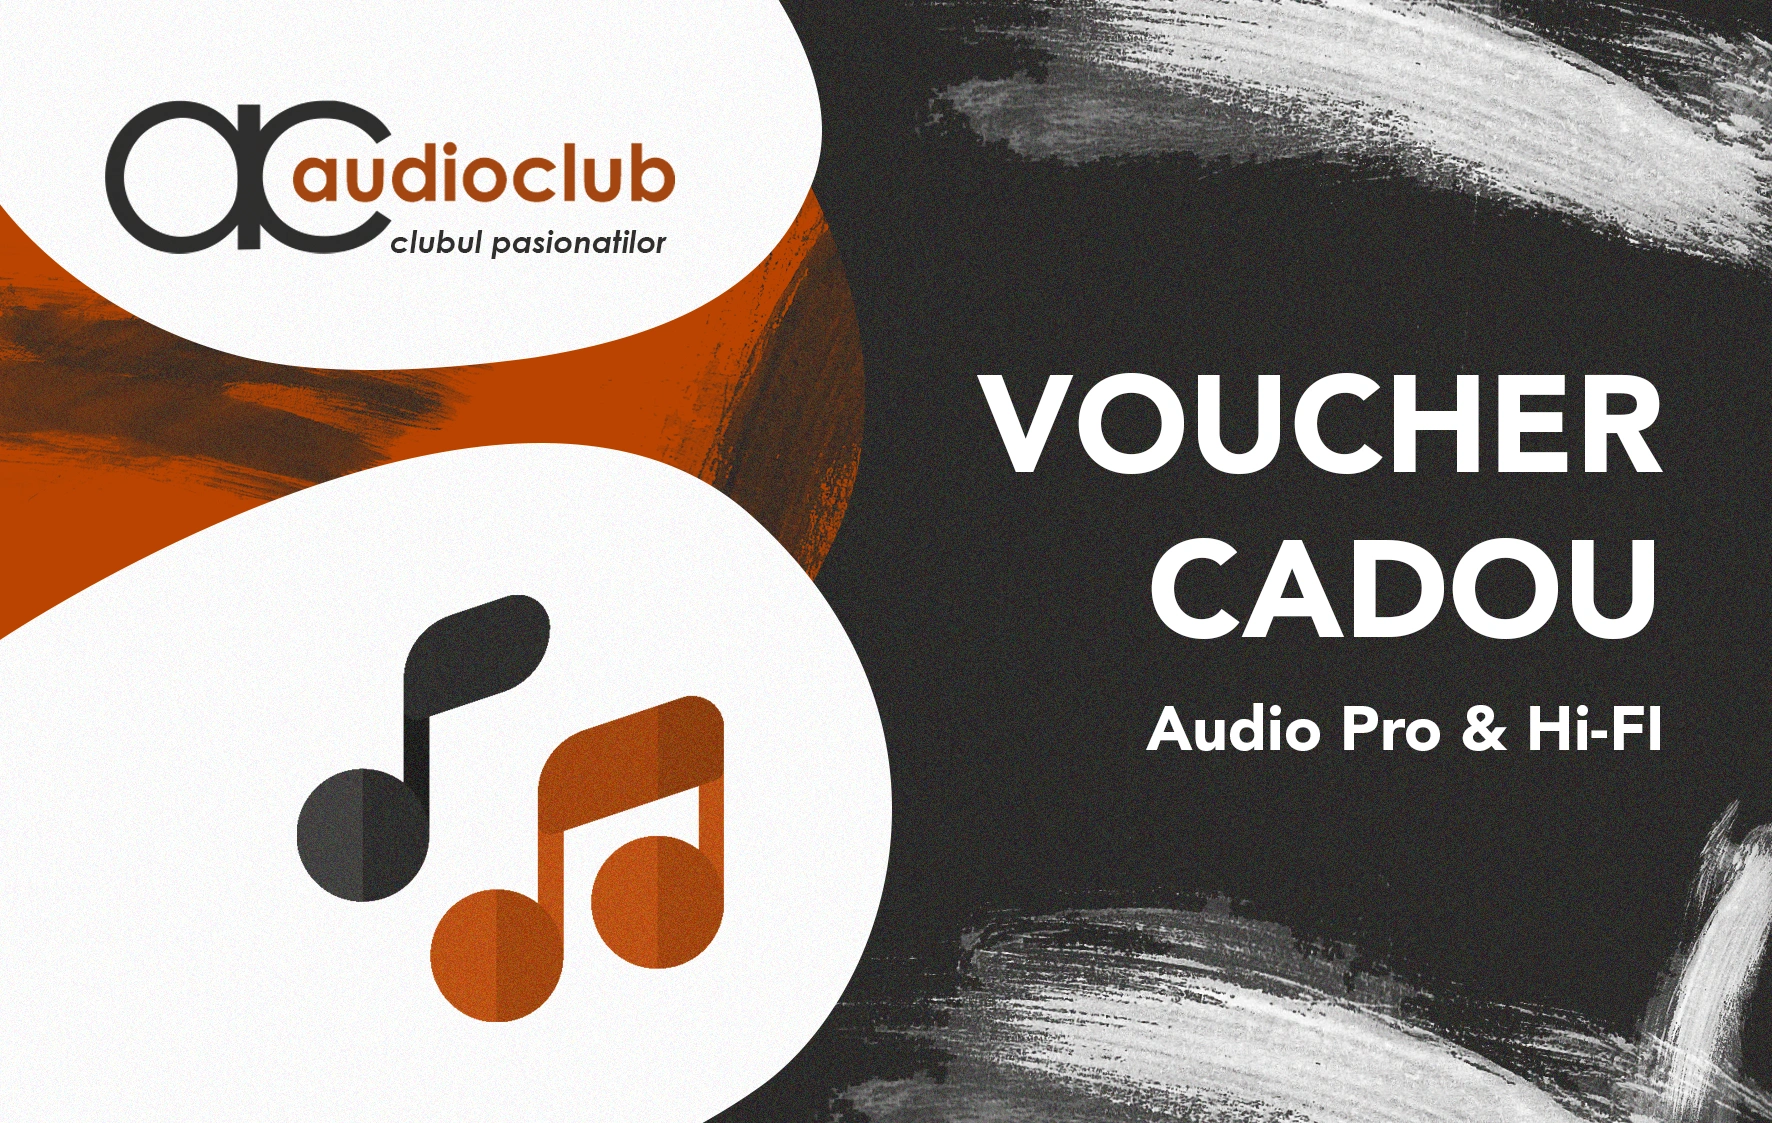 Carduri cadou & vouchere - Audioclub Voucher 2000 Ron, audioclub.ro